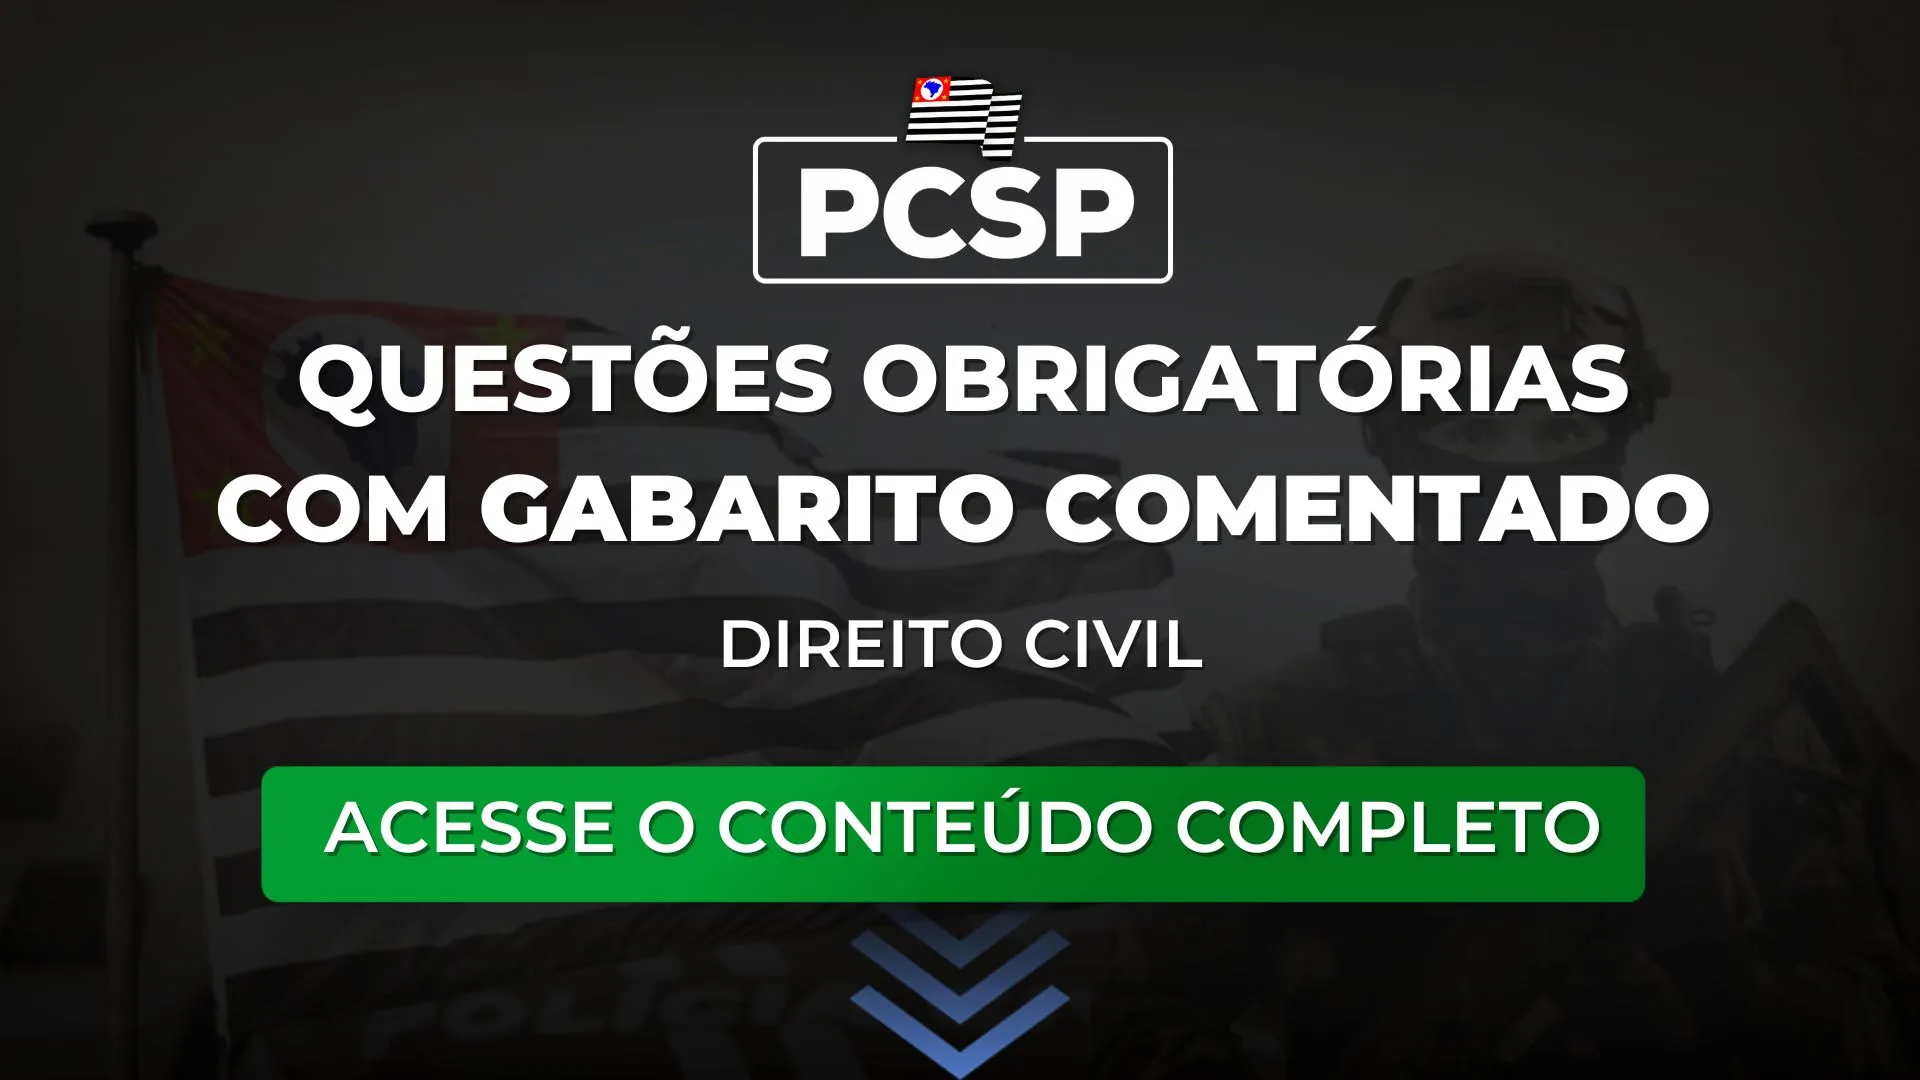 PCSP 23: Questões obrigatórias com gabarito comentado de Civil para o concurso